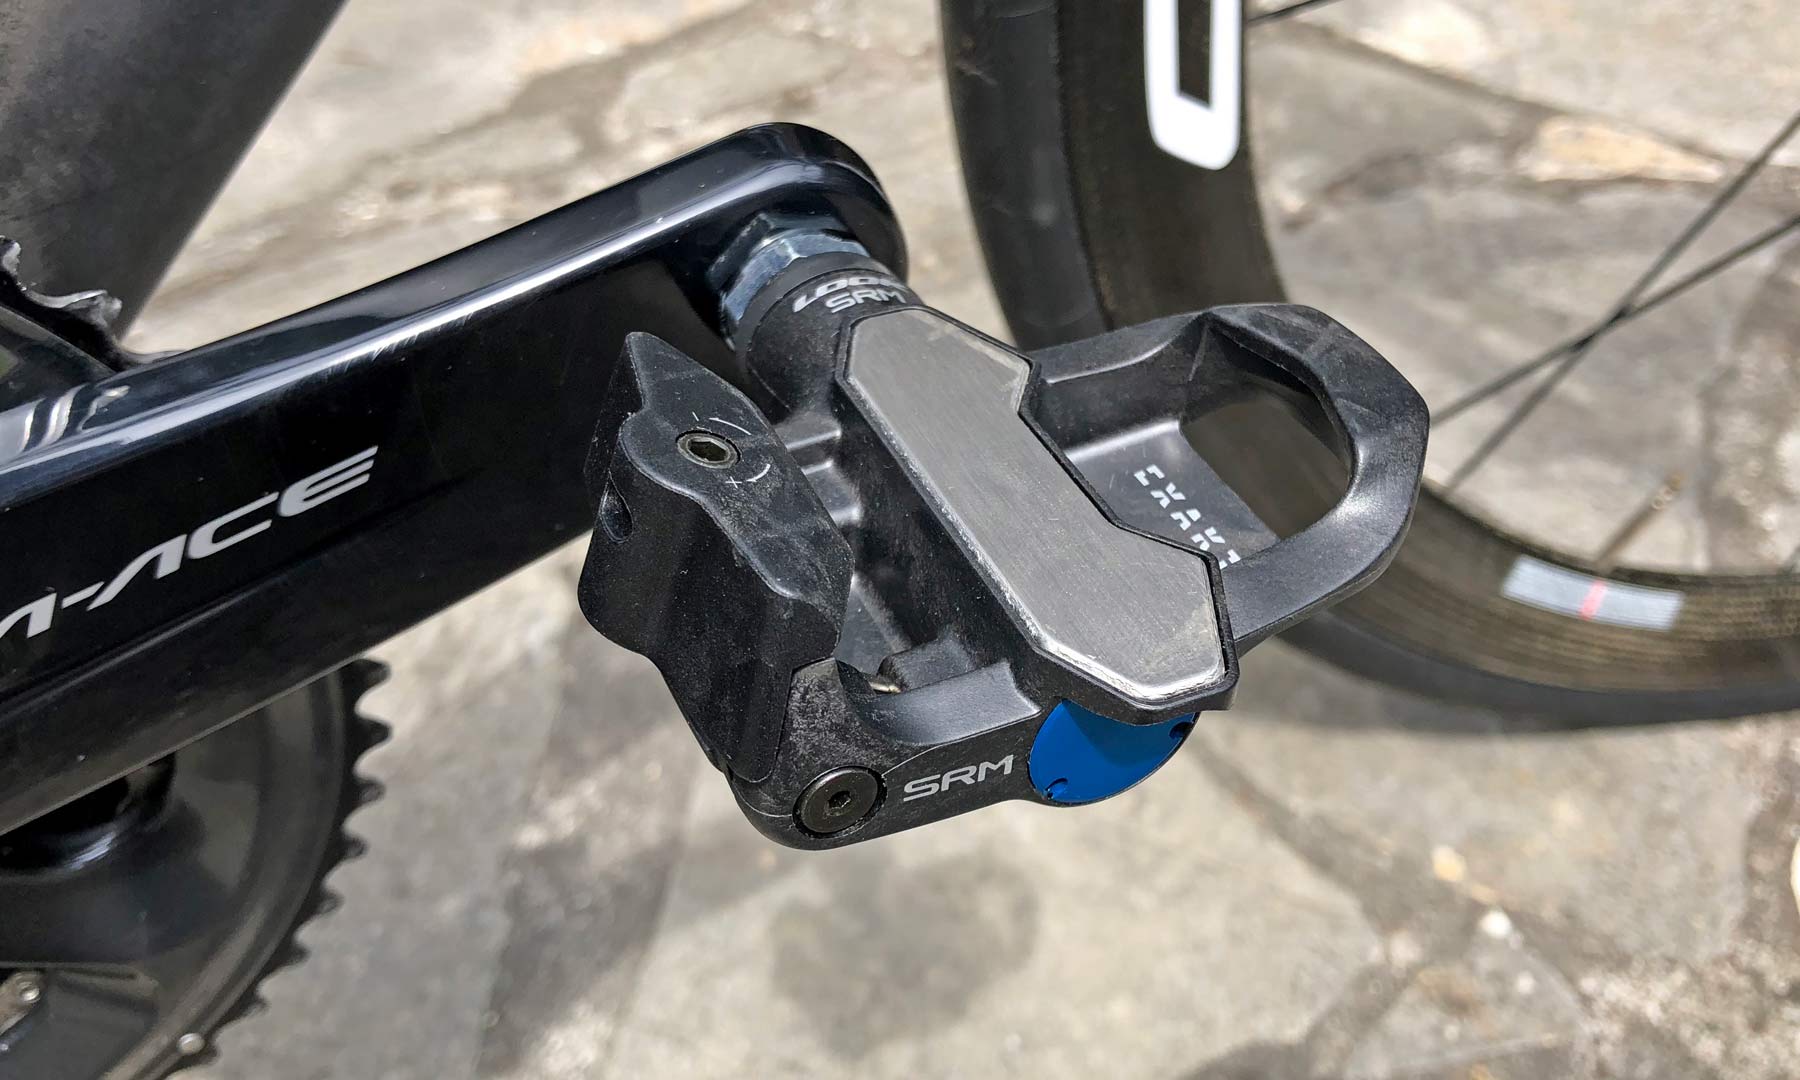 rust Terug kijken abces Look & SRM partner on low-profile, highly-accurate Exakt power meter pedals  - Bikerumor